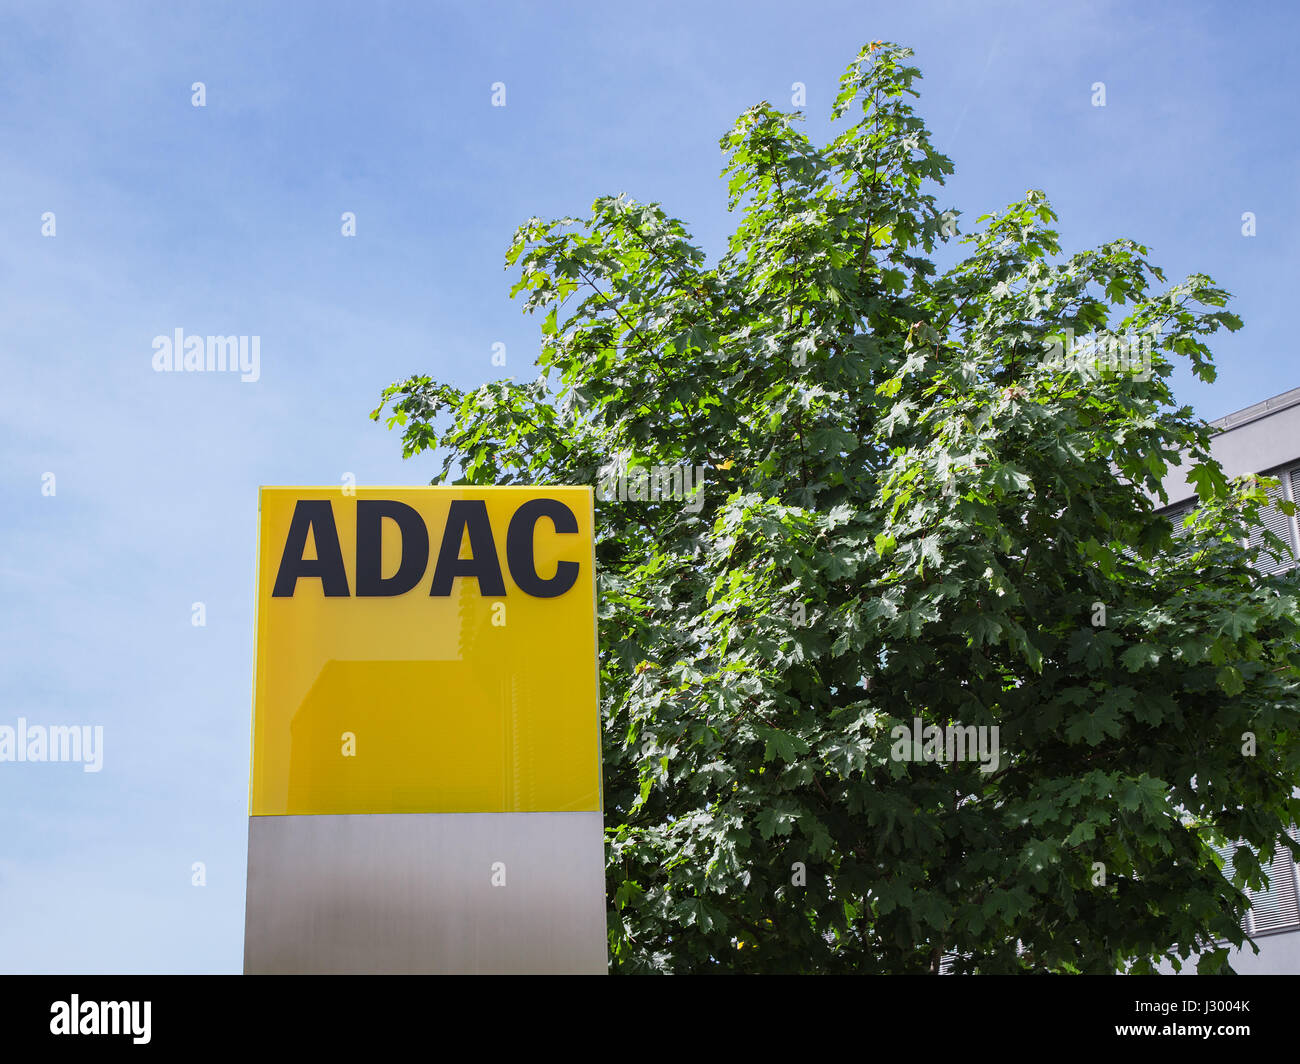 München, Deutschland - 12. Mai 2015: ADAC Schilder mit deutschen Automobilclub Logo größten Automobil-Verband in Europa. Stockfoto